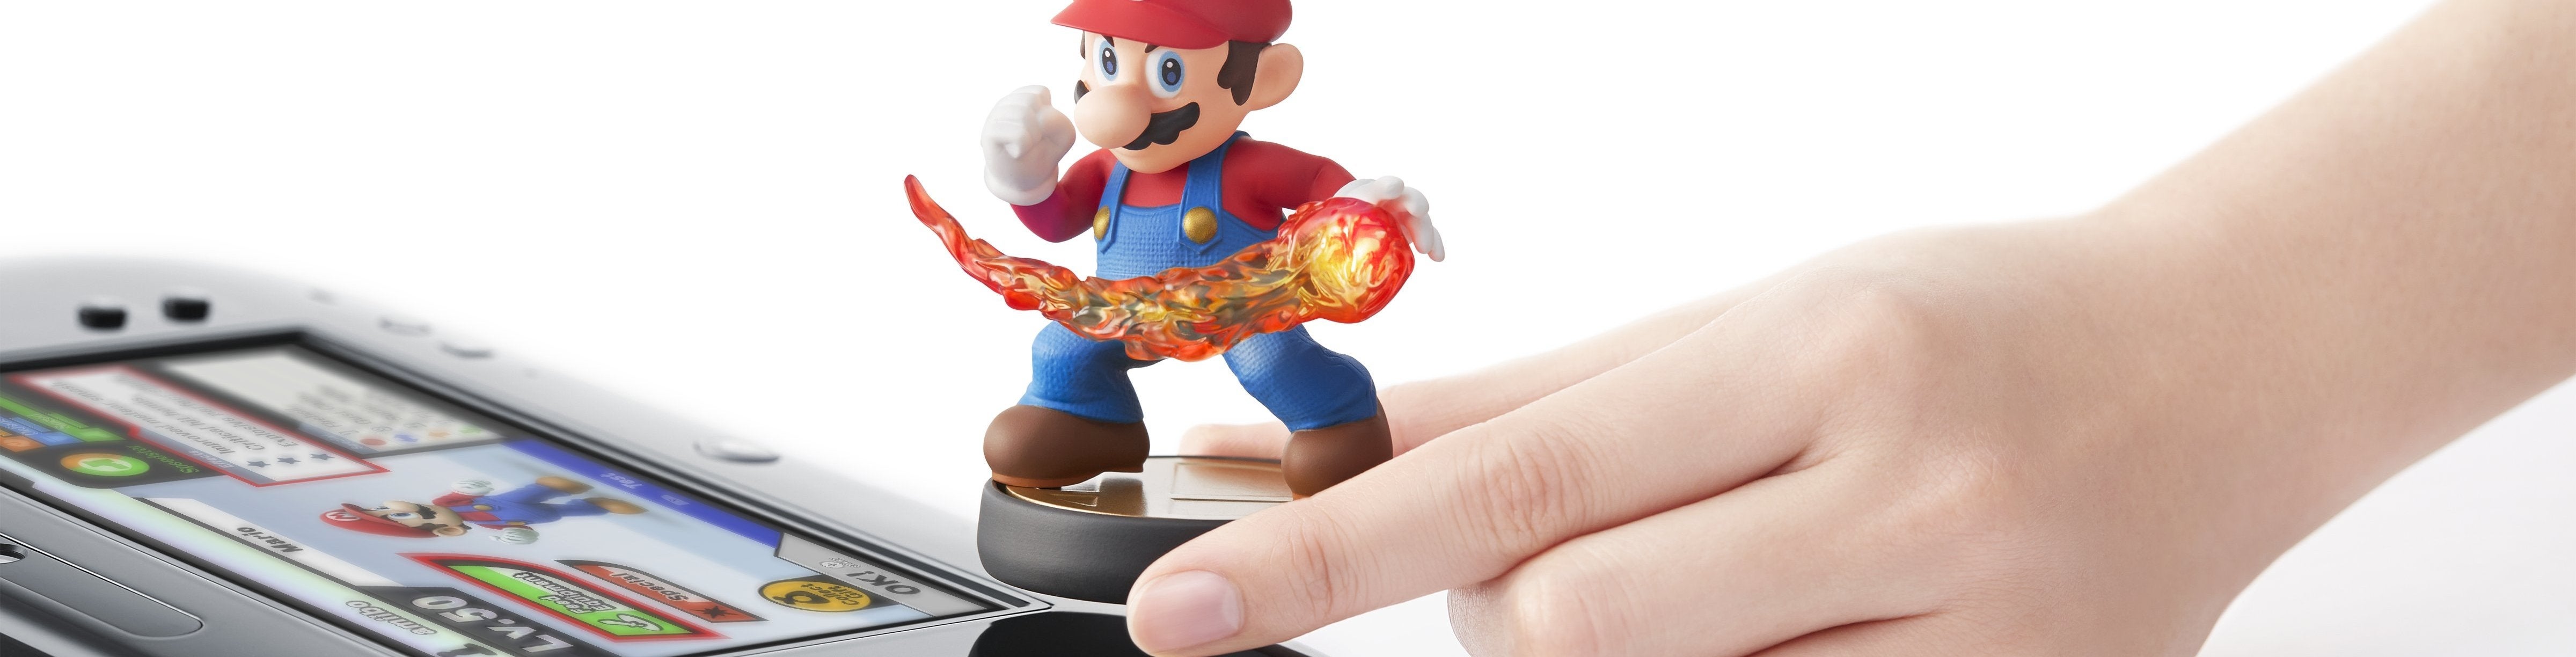 Afbeeldingen van Nintendo onthult interactieve figuurtjes 'amiibo'